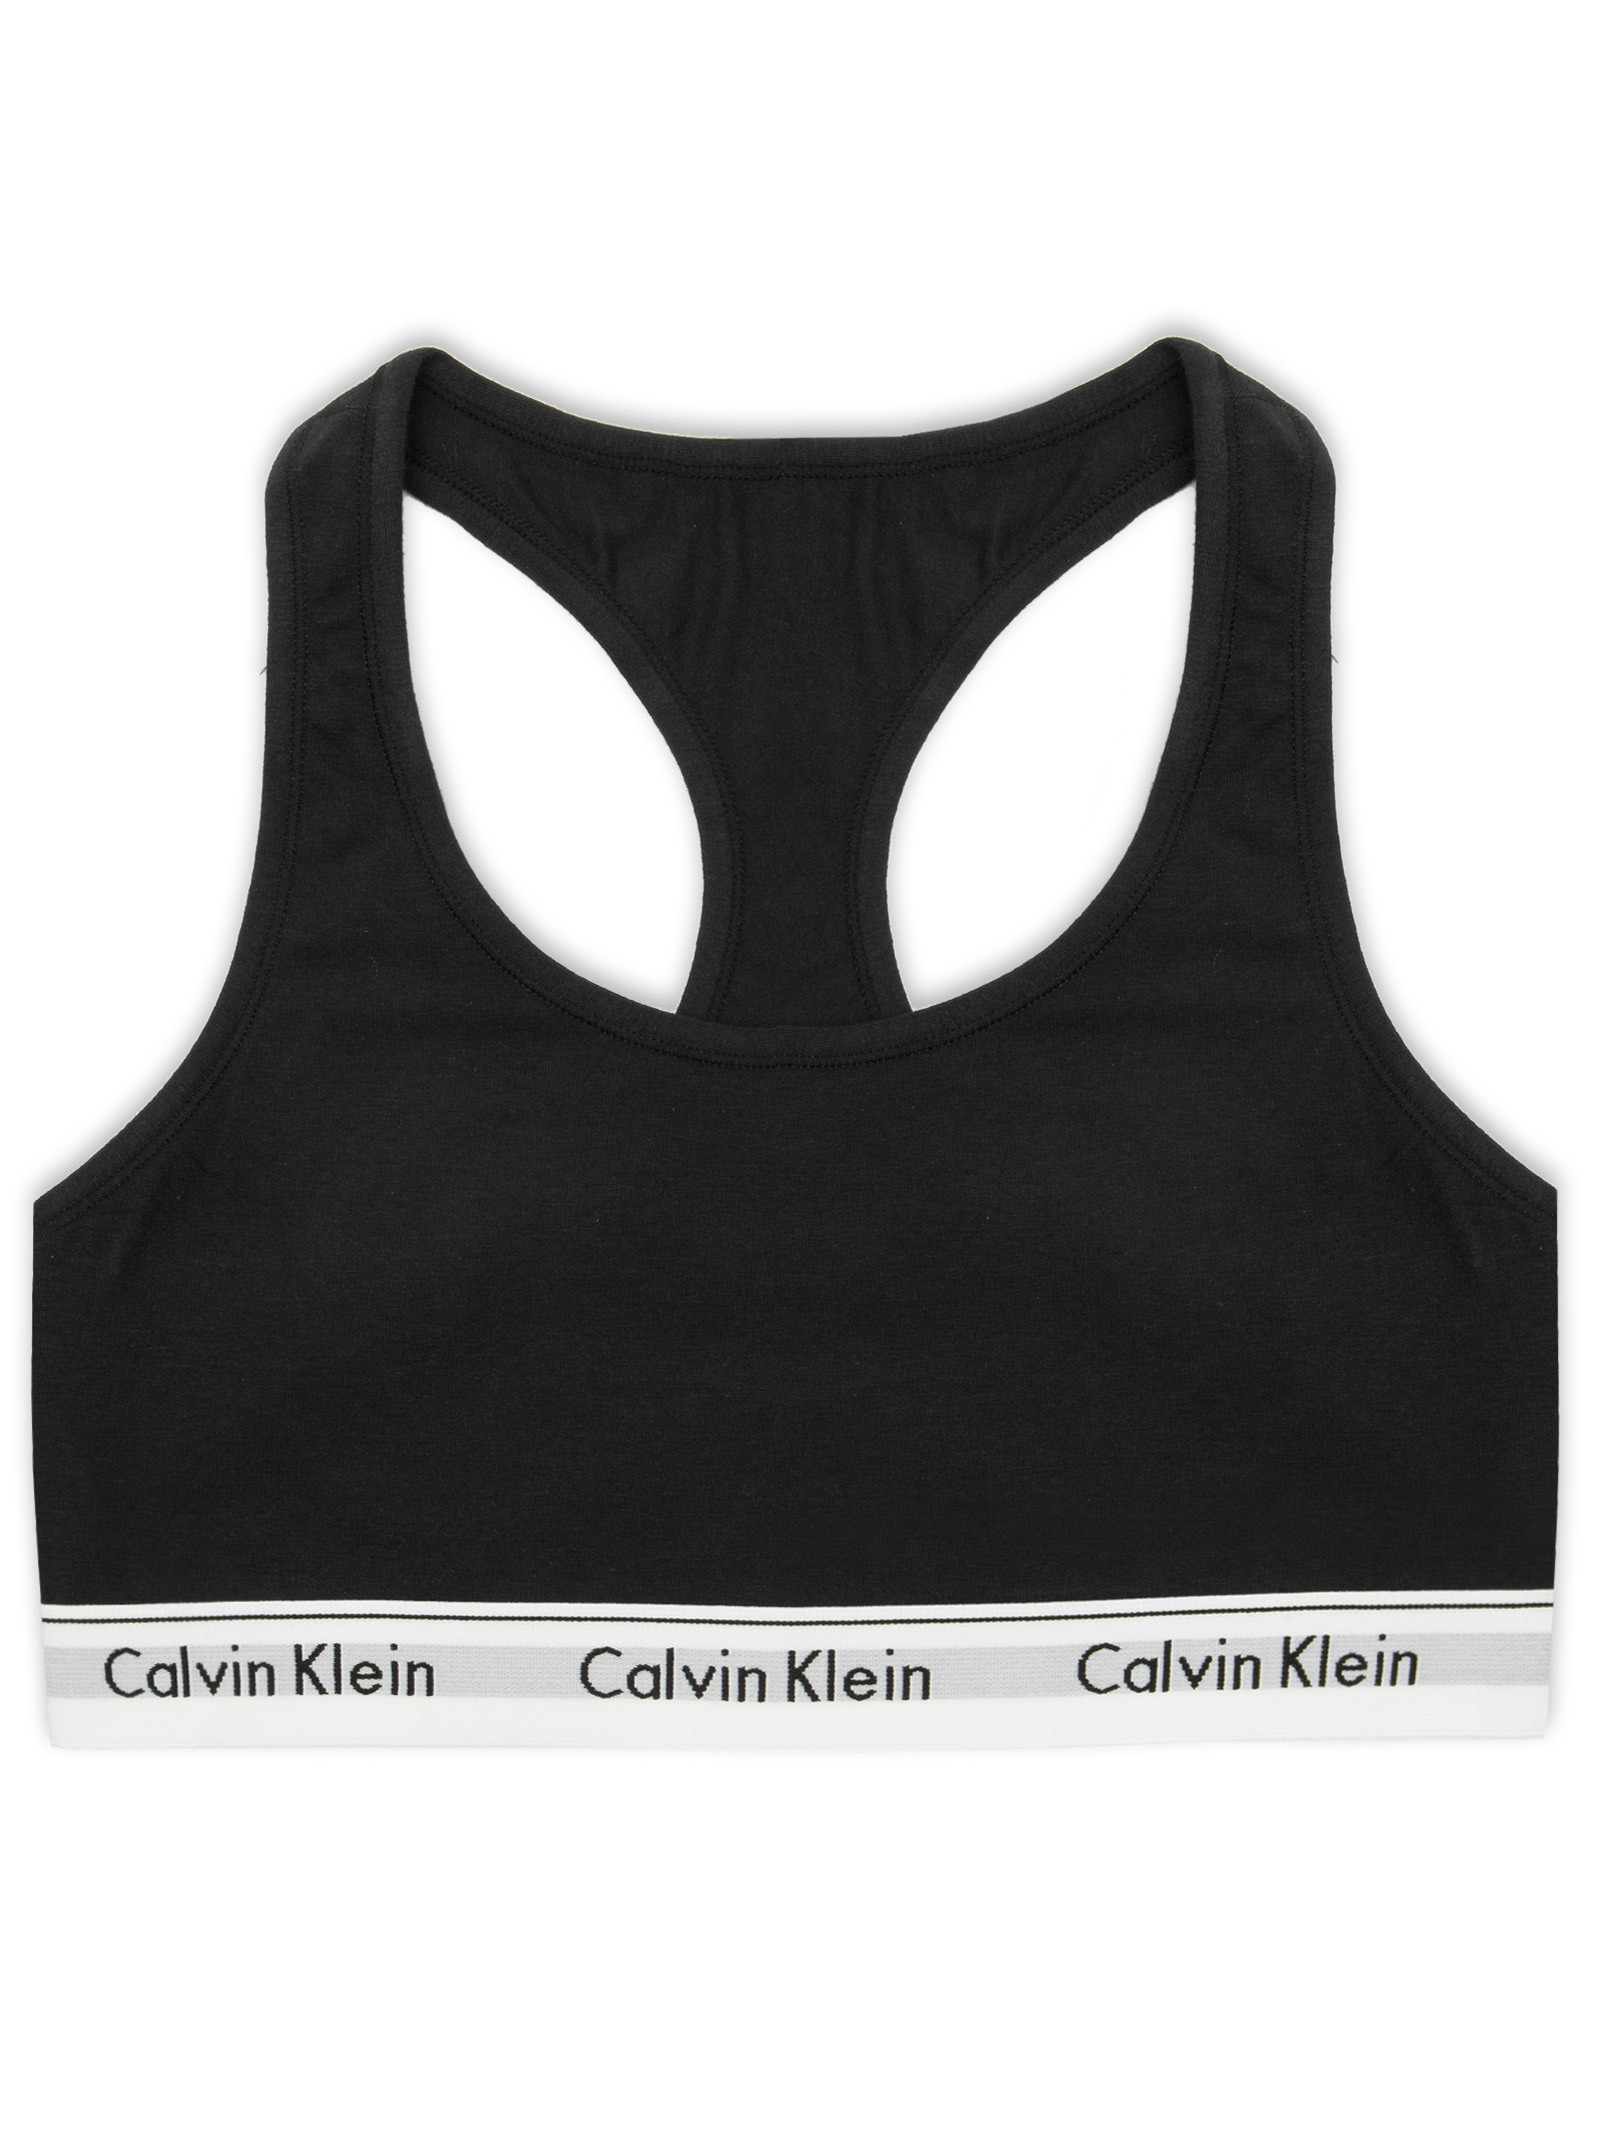 Top Nadador Modern Cotton Plus Size - Calvin Klein Underwear